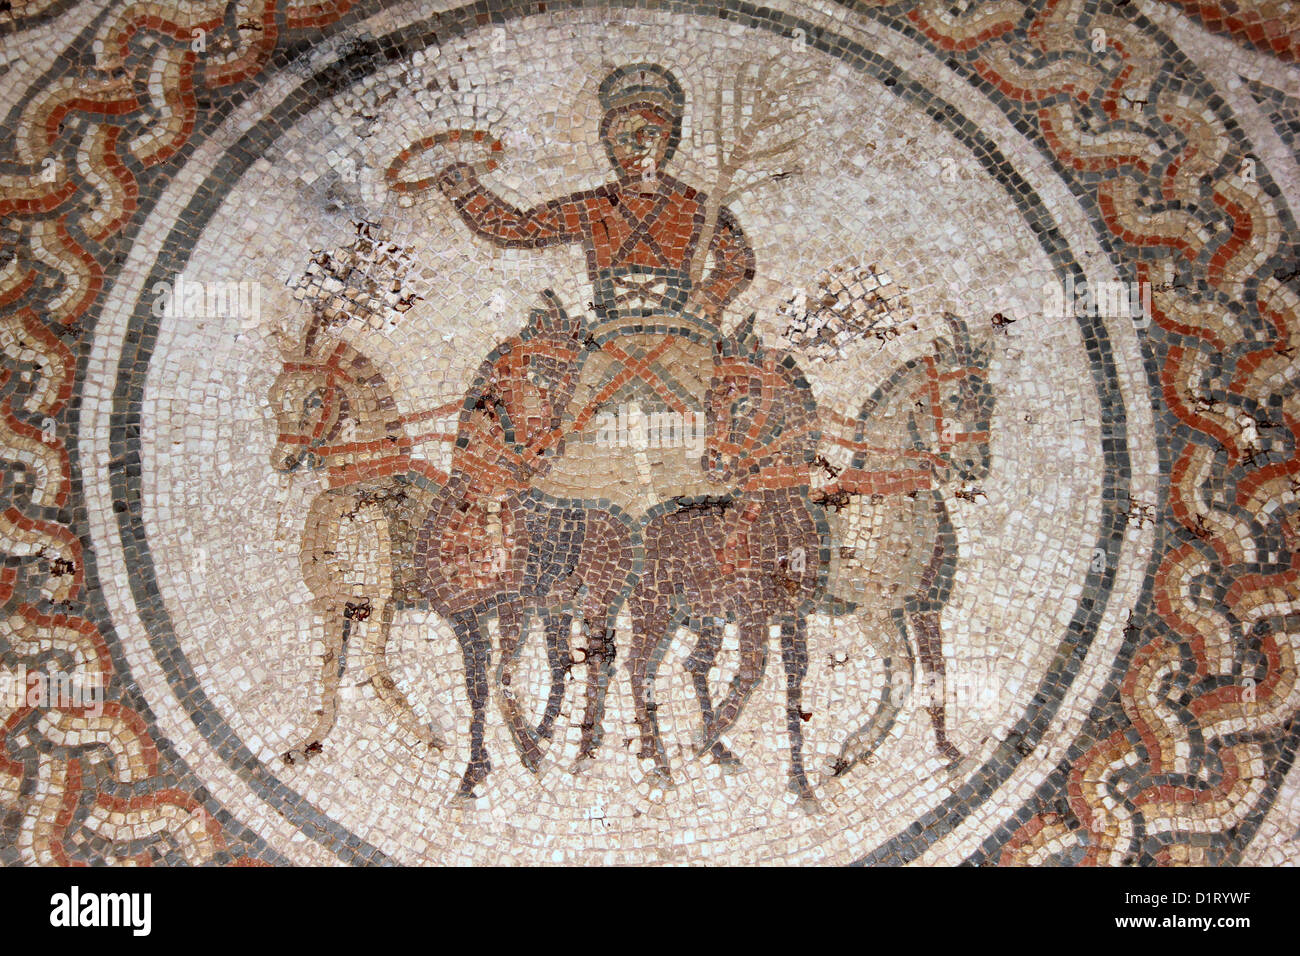 Il Charioteer mosaico trovata nel quarto secolo d.c. la villa romana nei pressi di Rudston, East Yorkshire Foto Stock